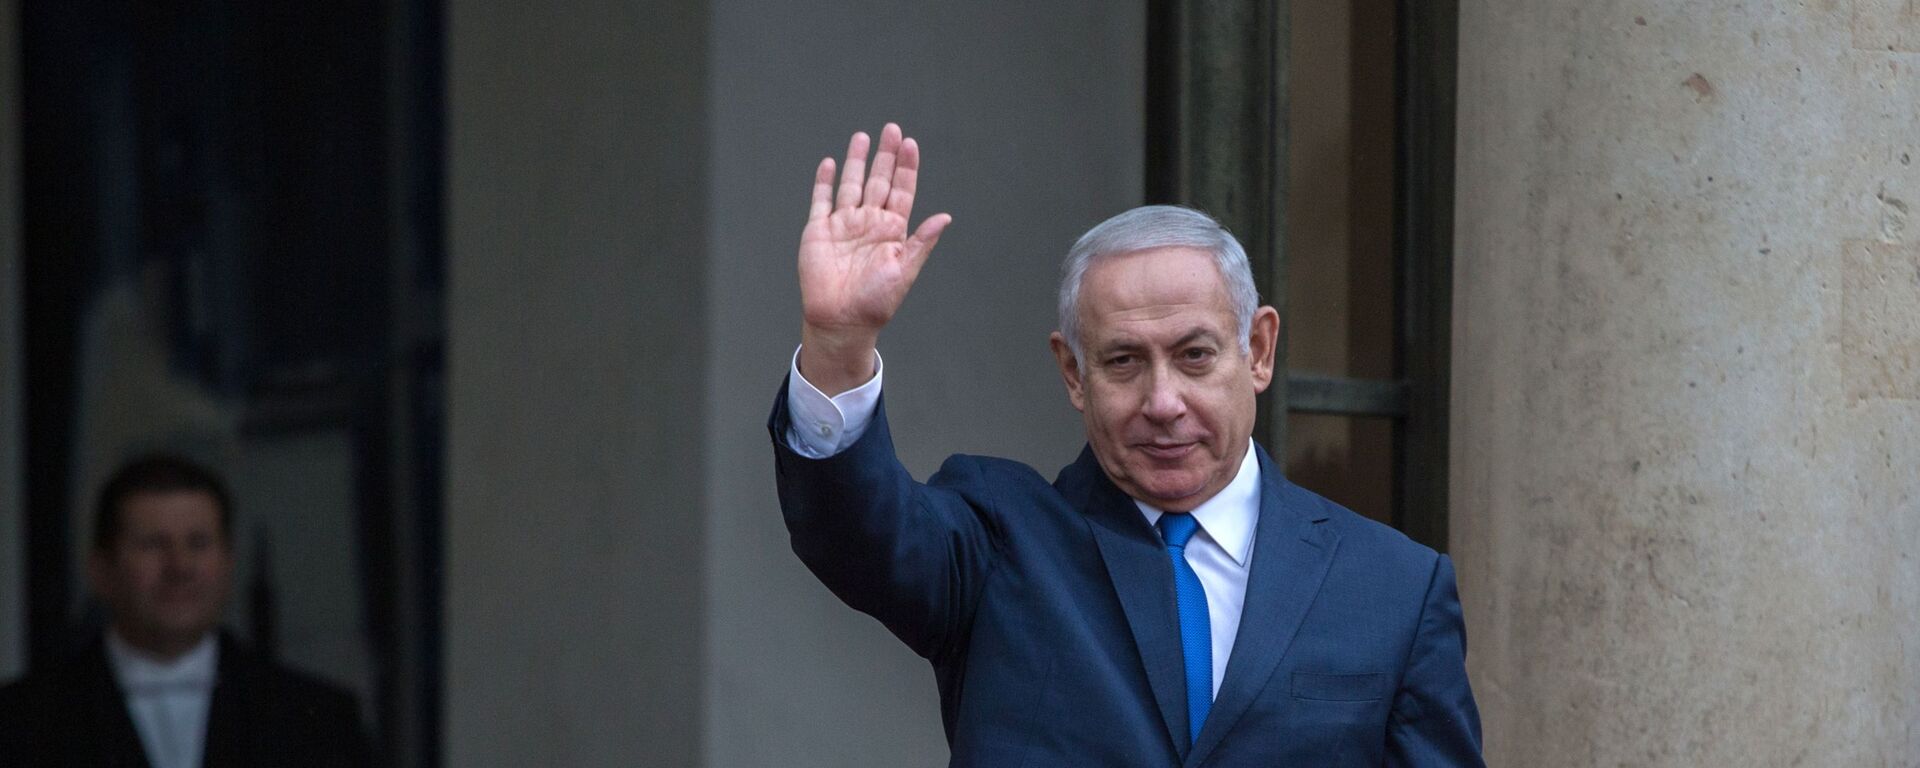 نتانیاهو مطمئن است که می تواند دولت جدید اسرائیل را تشکیل دهد و رهبری کند - اسپوتنیک ایران  , 1920, 20.06.2022